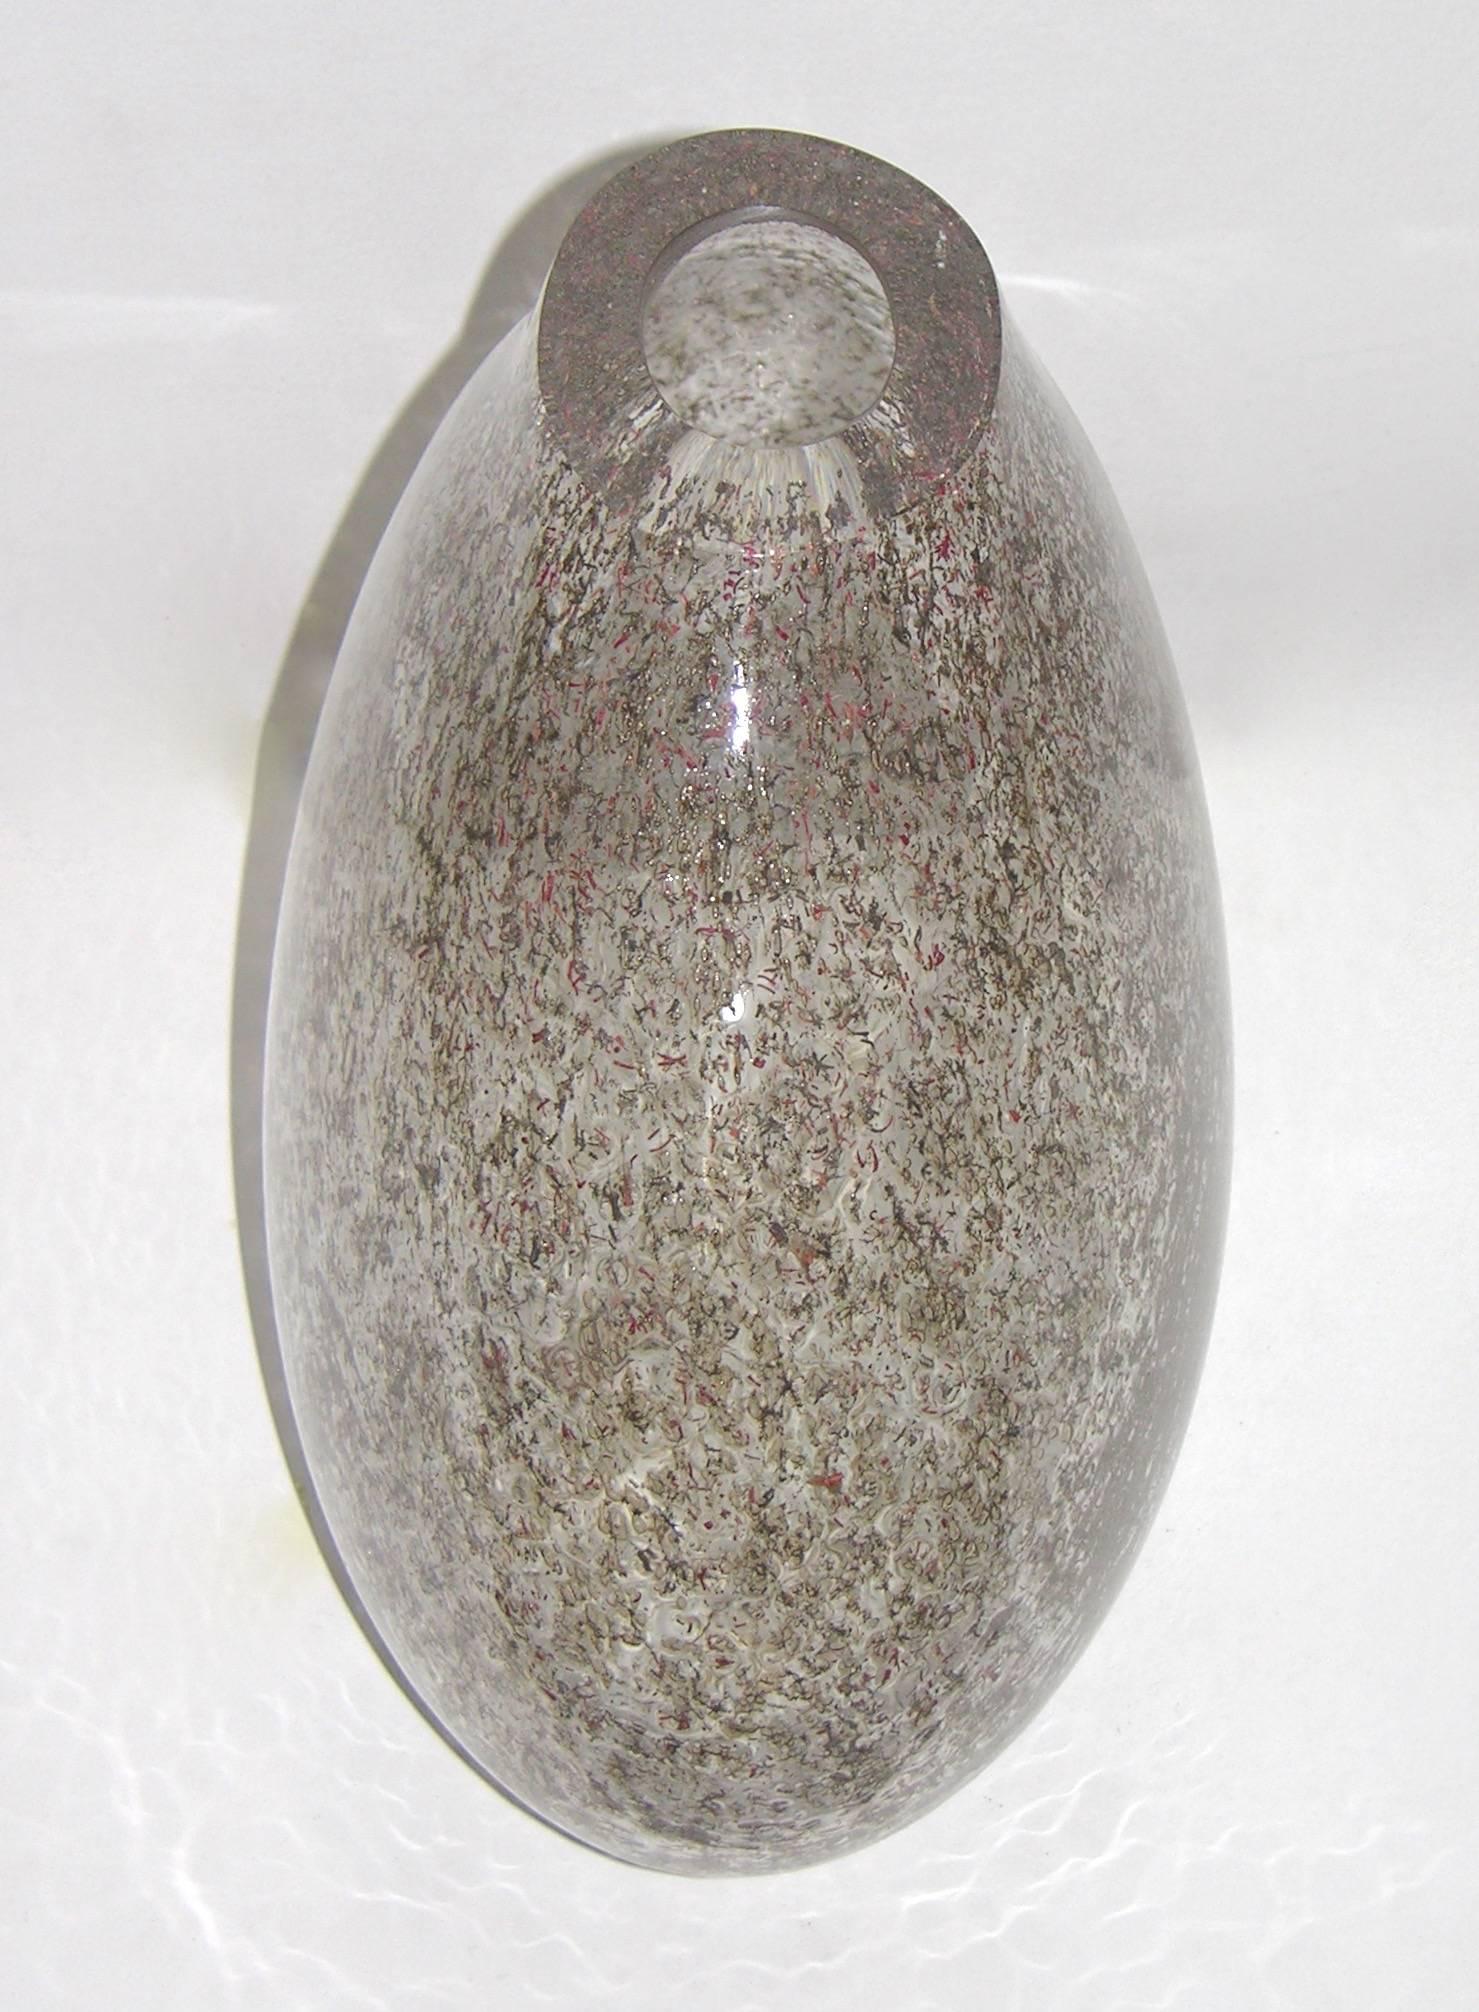 Eine sehr interessante Vase aus mundgeblasenem Murano-Glas, eine Kreation von Paolo Crepax für Le Fablier. Die Textur ist unglaublich dank einer außergewöhnlichen Technik, bei der rote und grüne organische Fäden in das klare, mit Blasen bearbeitete